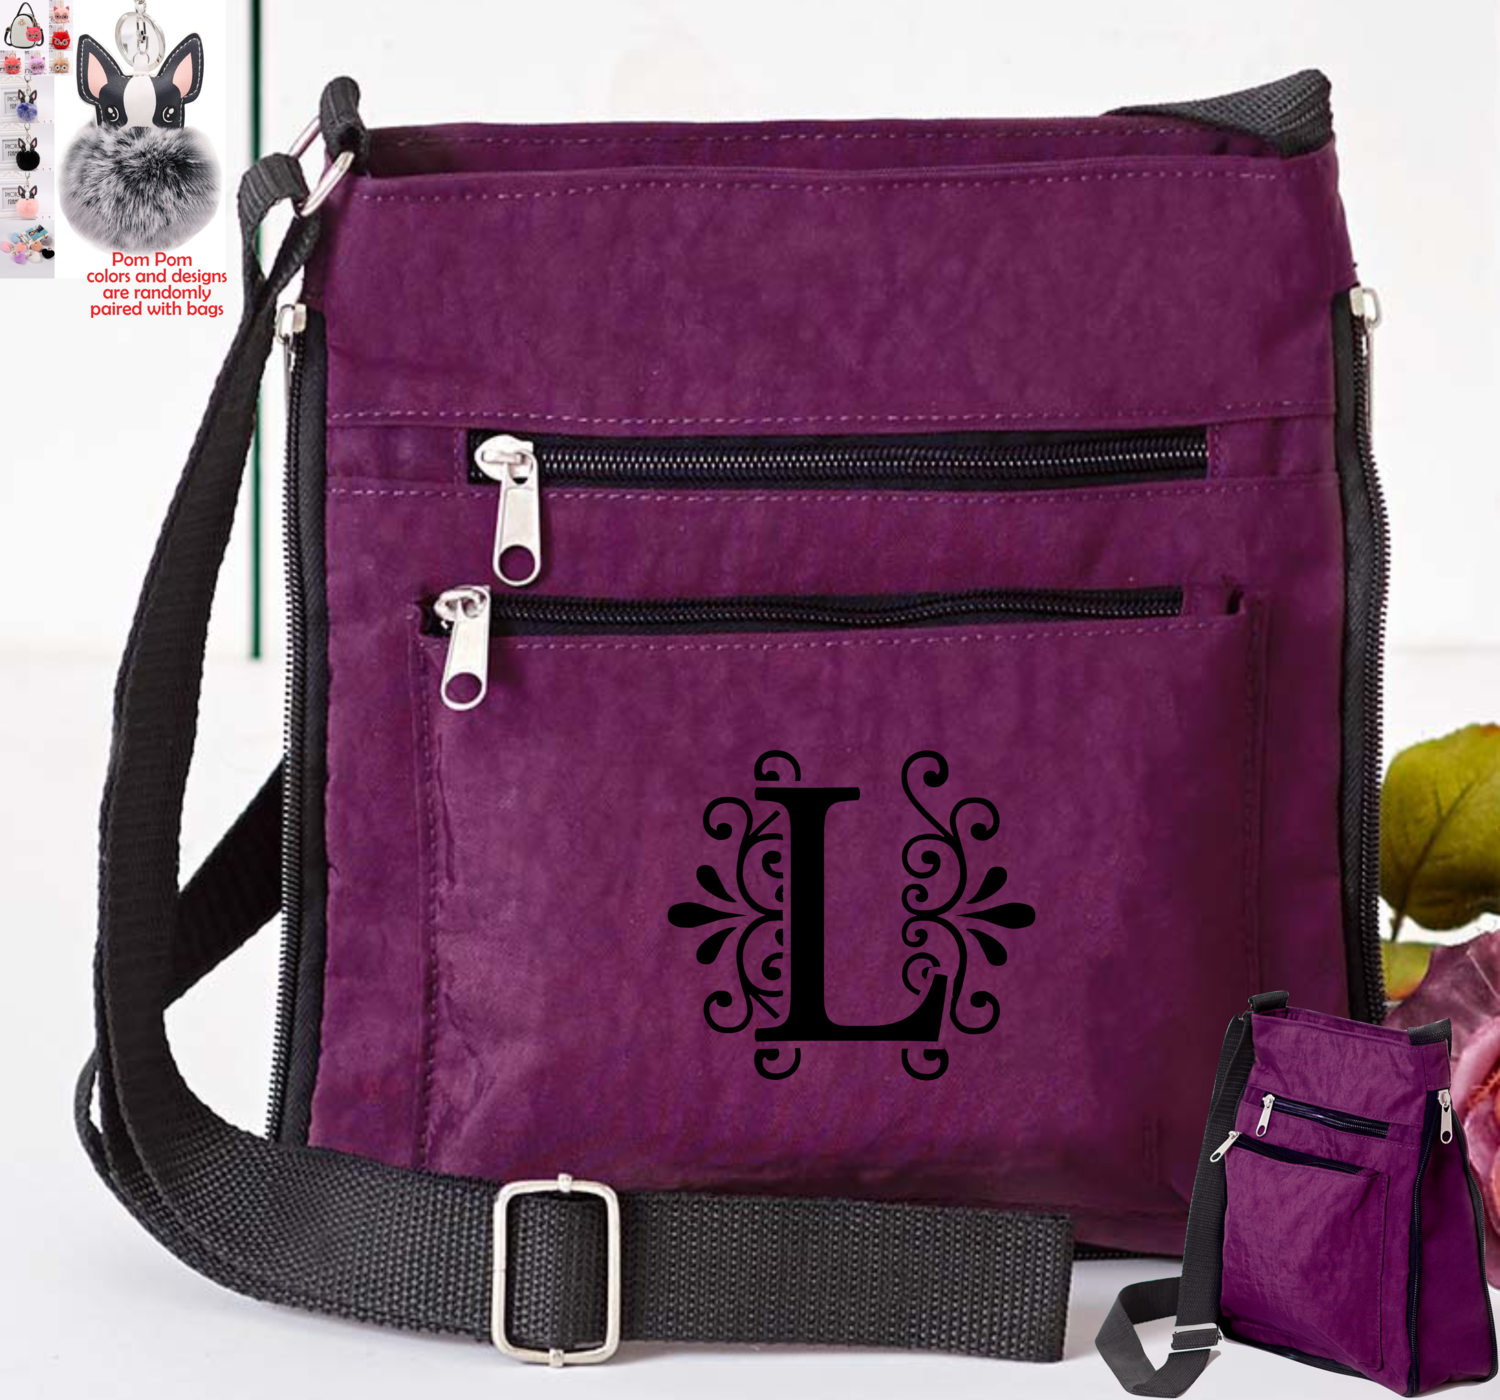 Personalized Crossbody Bags With Pom Pom Charm